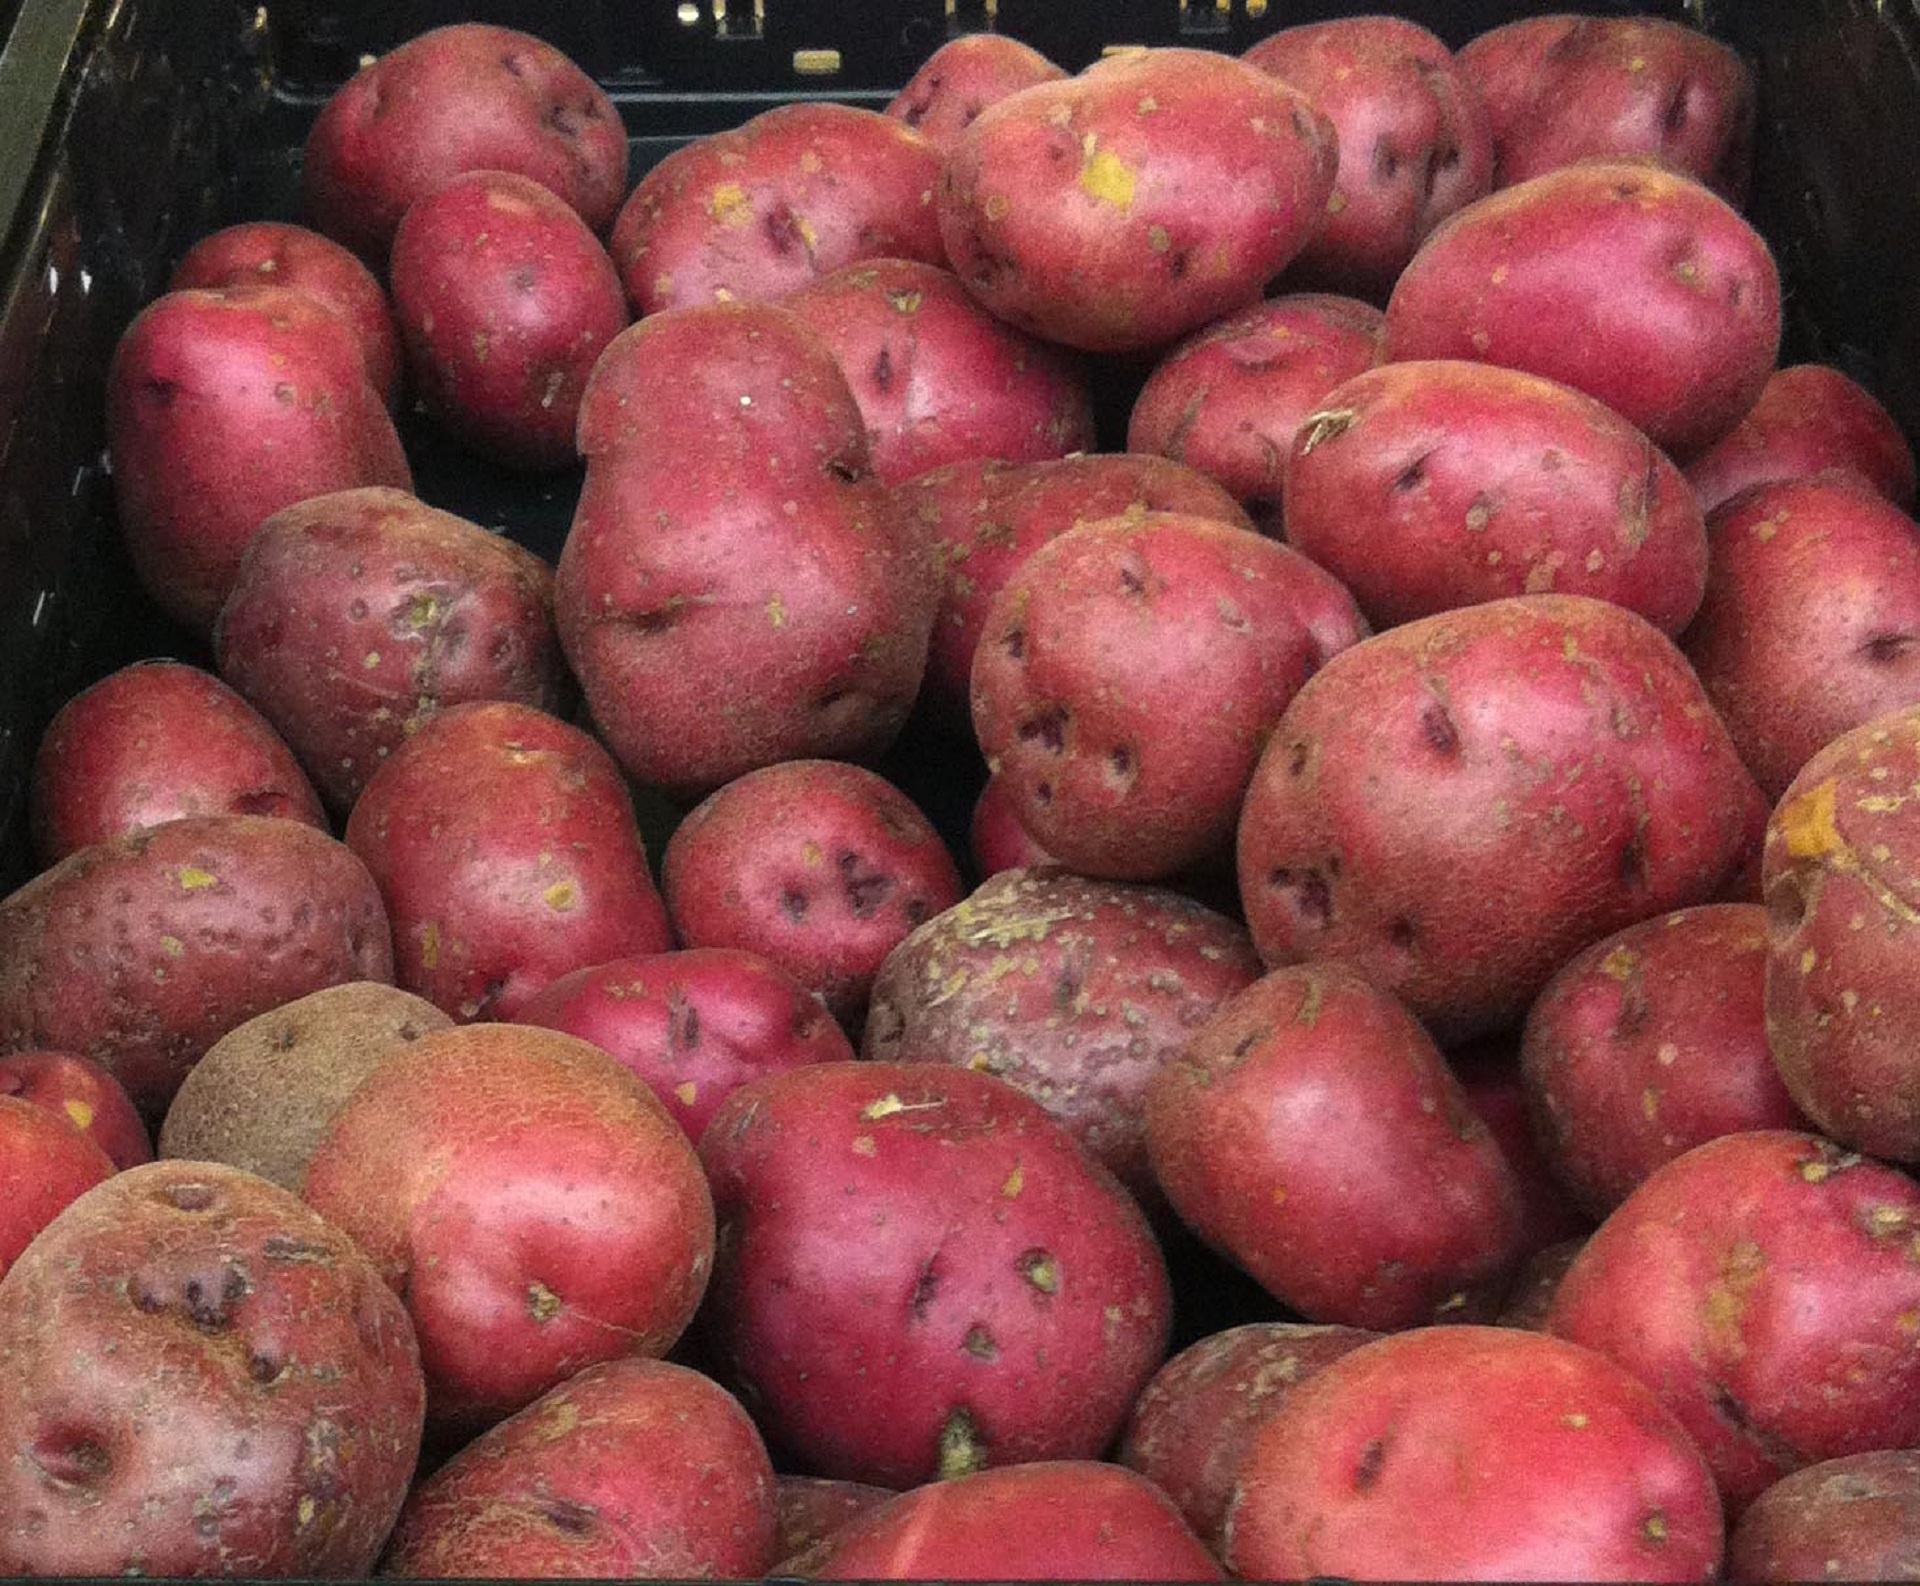 red potatoes varieties spuds free photo